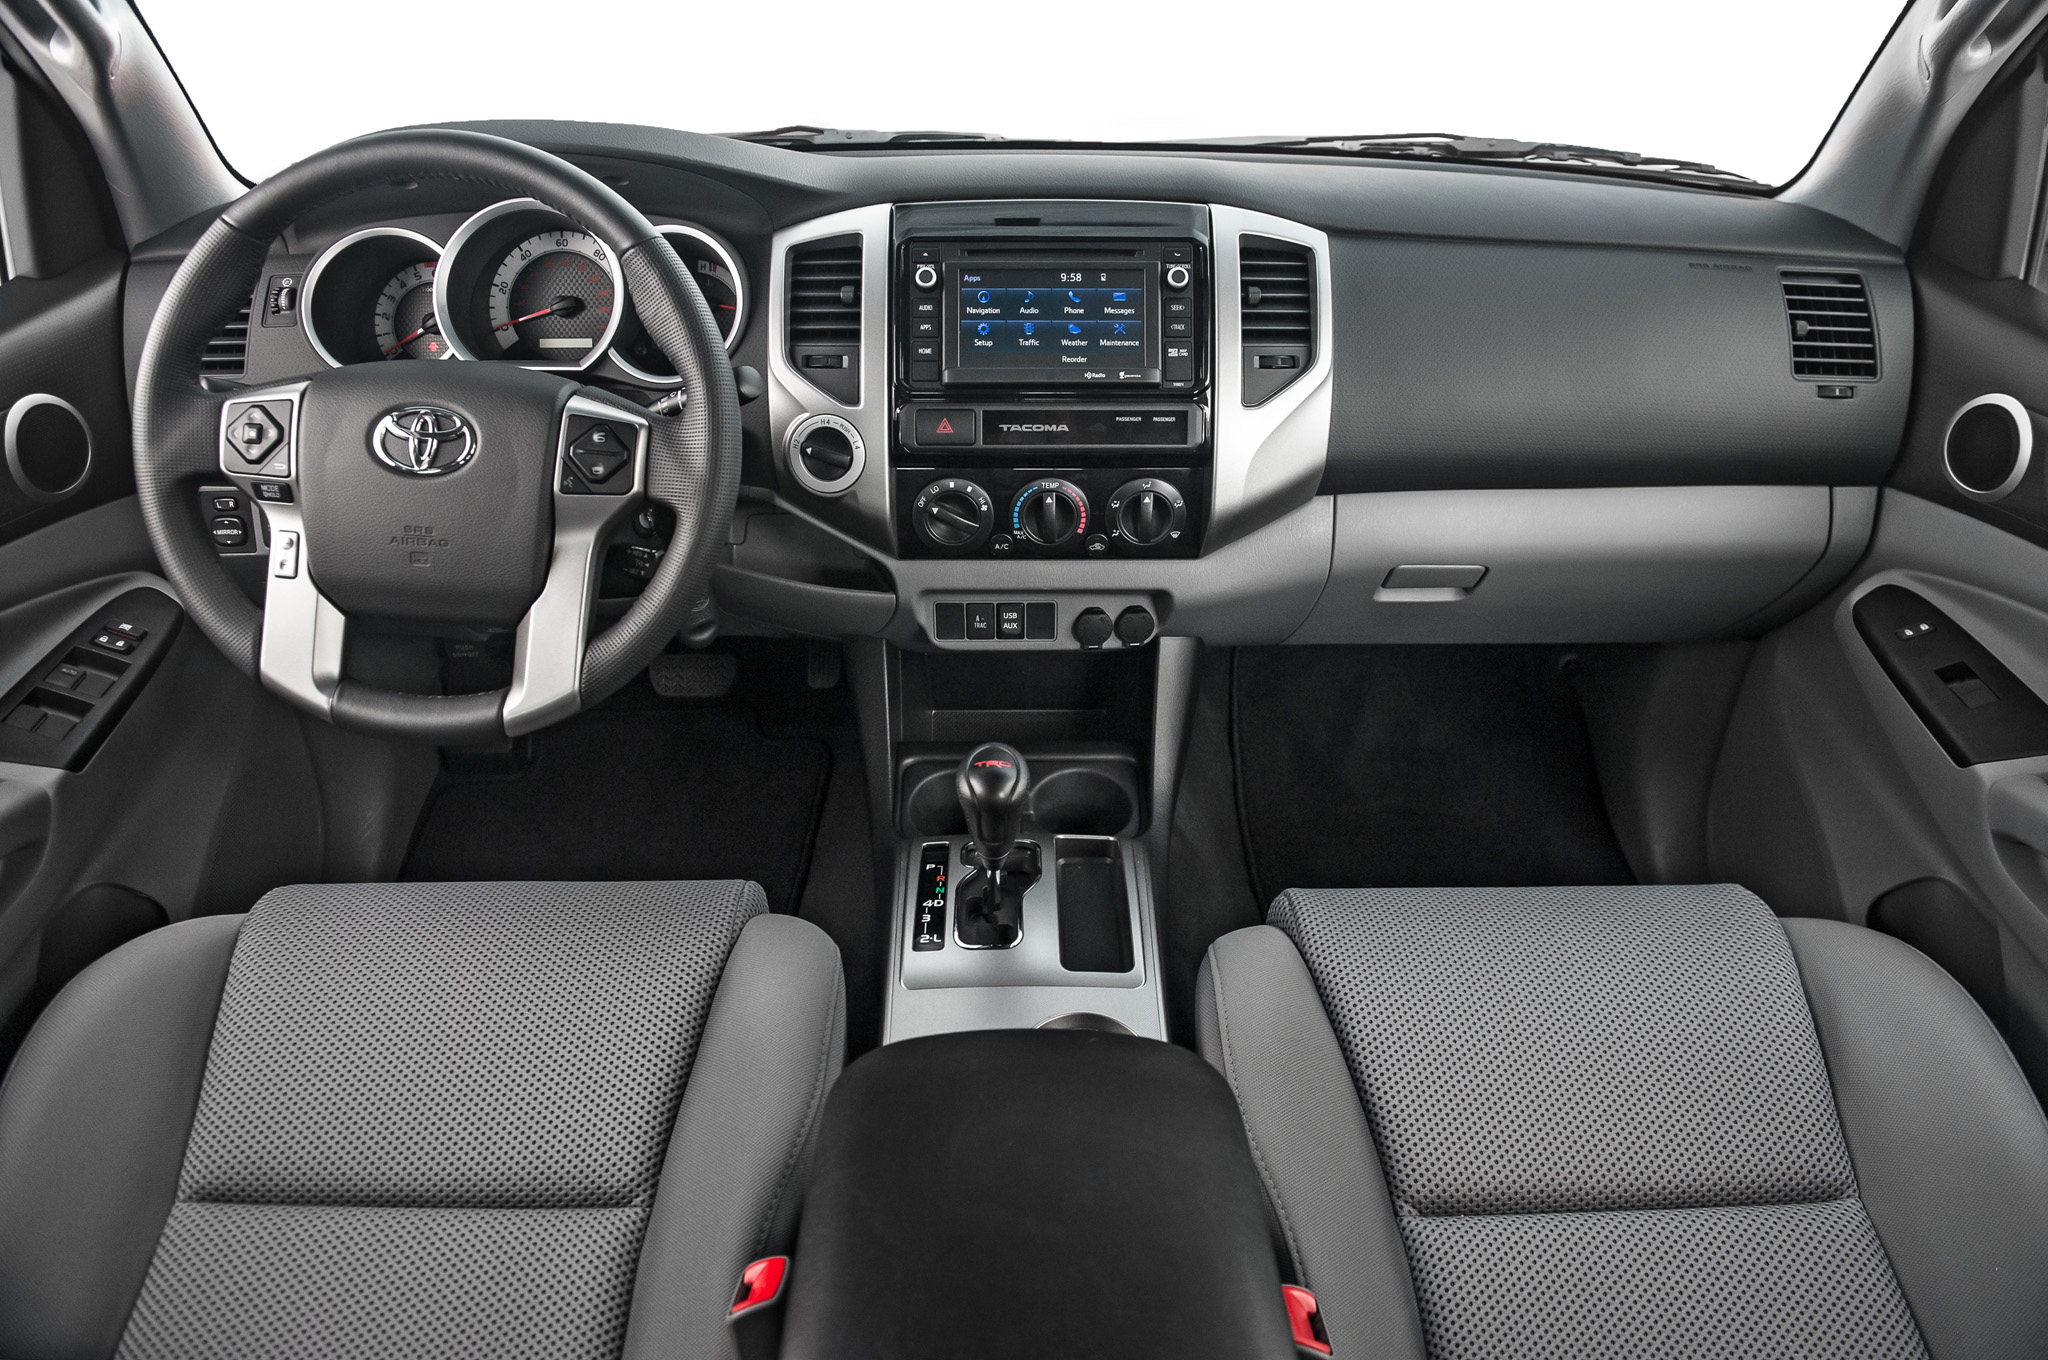 2015 toyota tacoma interior - Thomasville Toyota